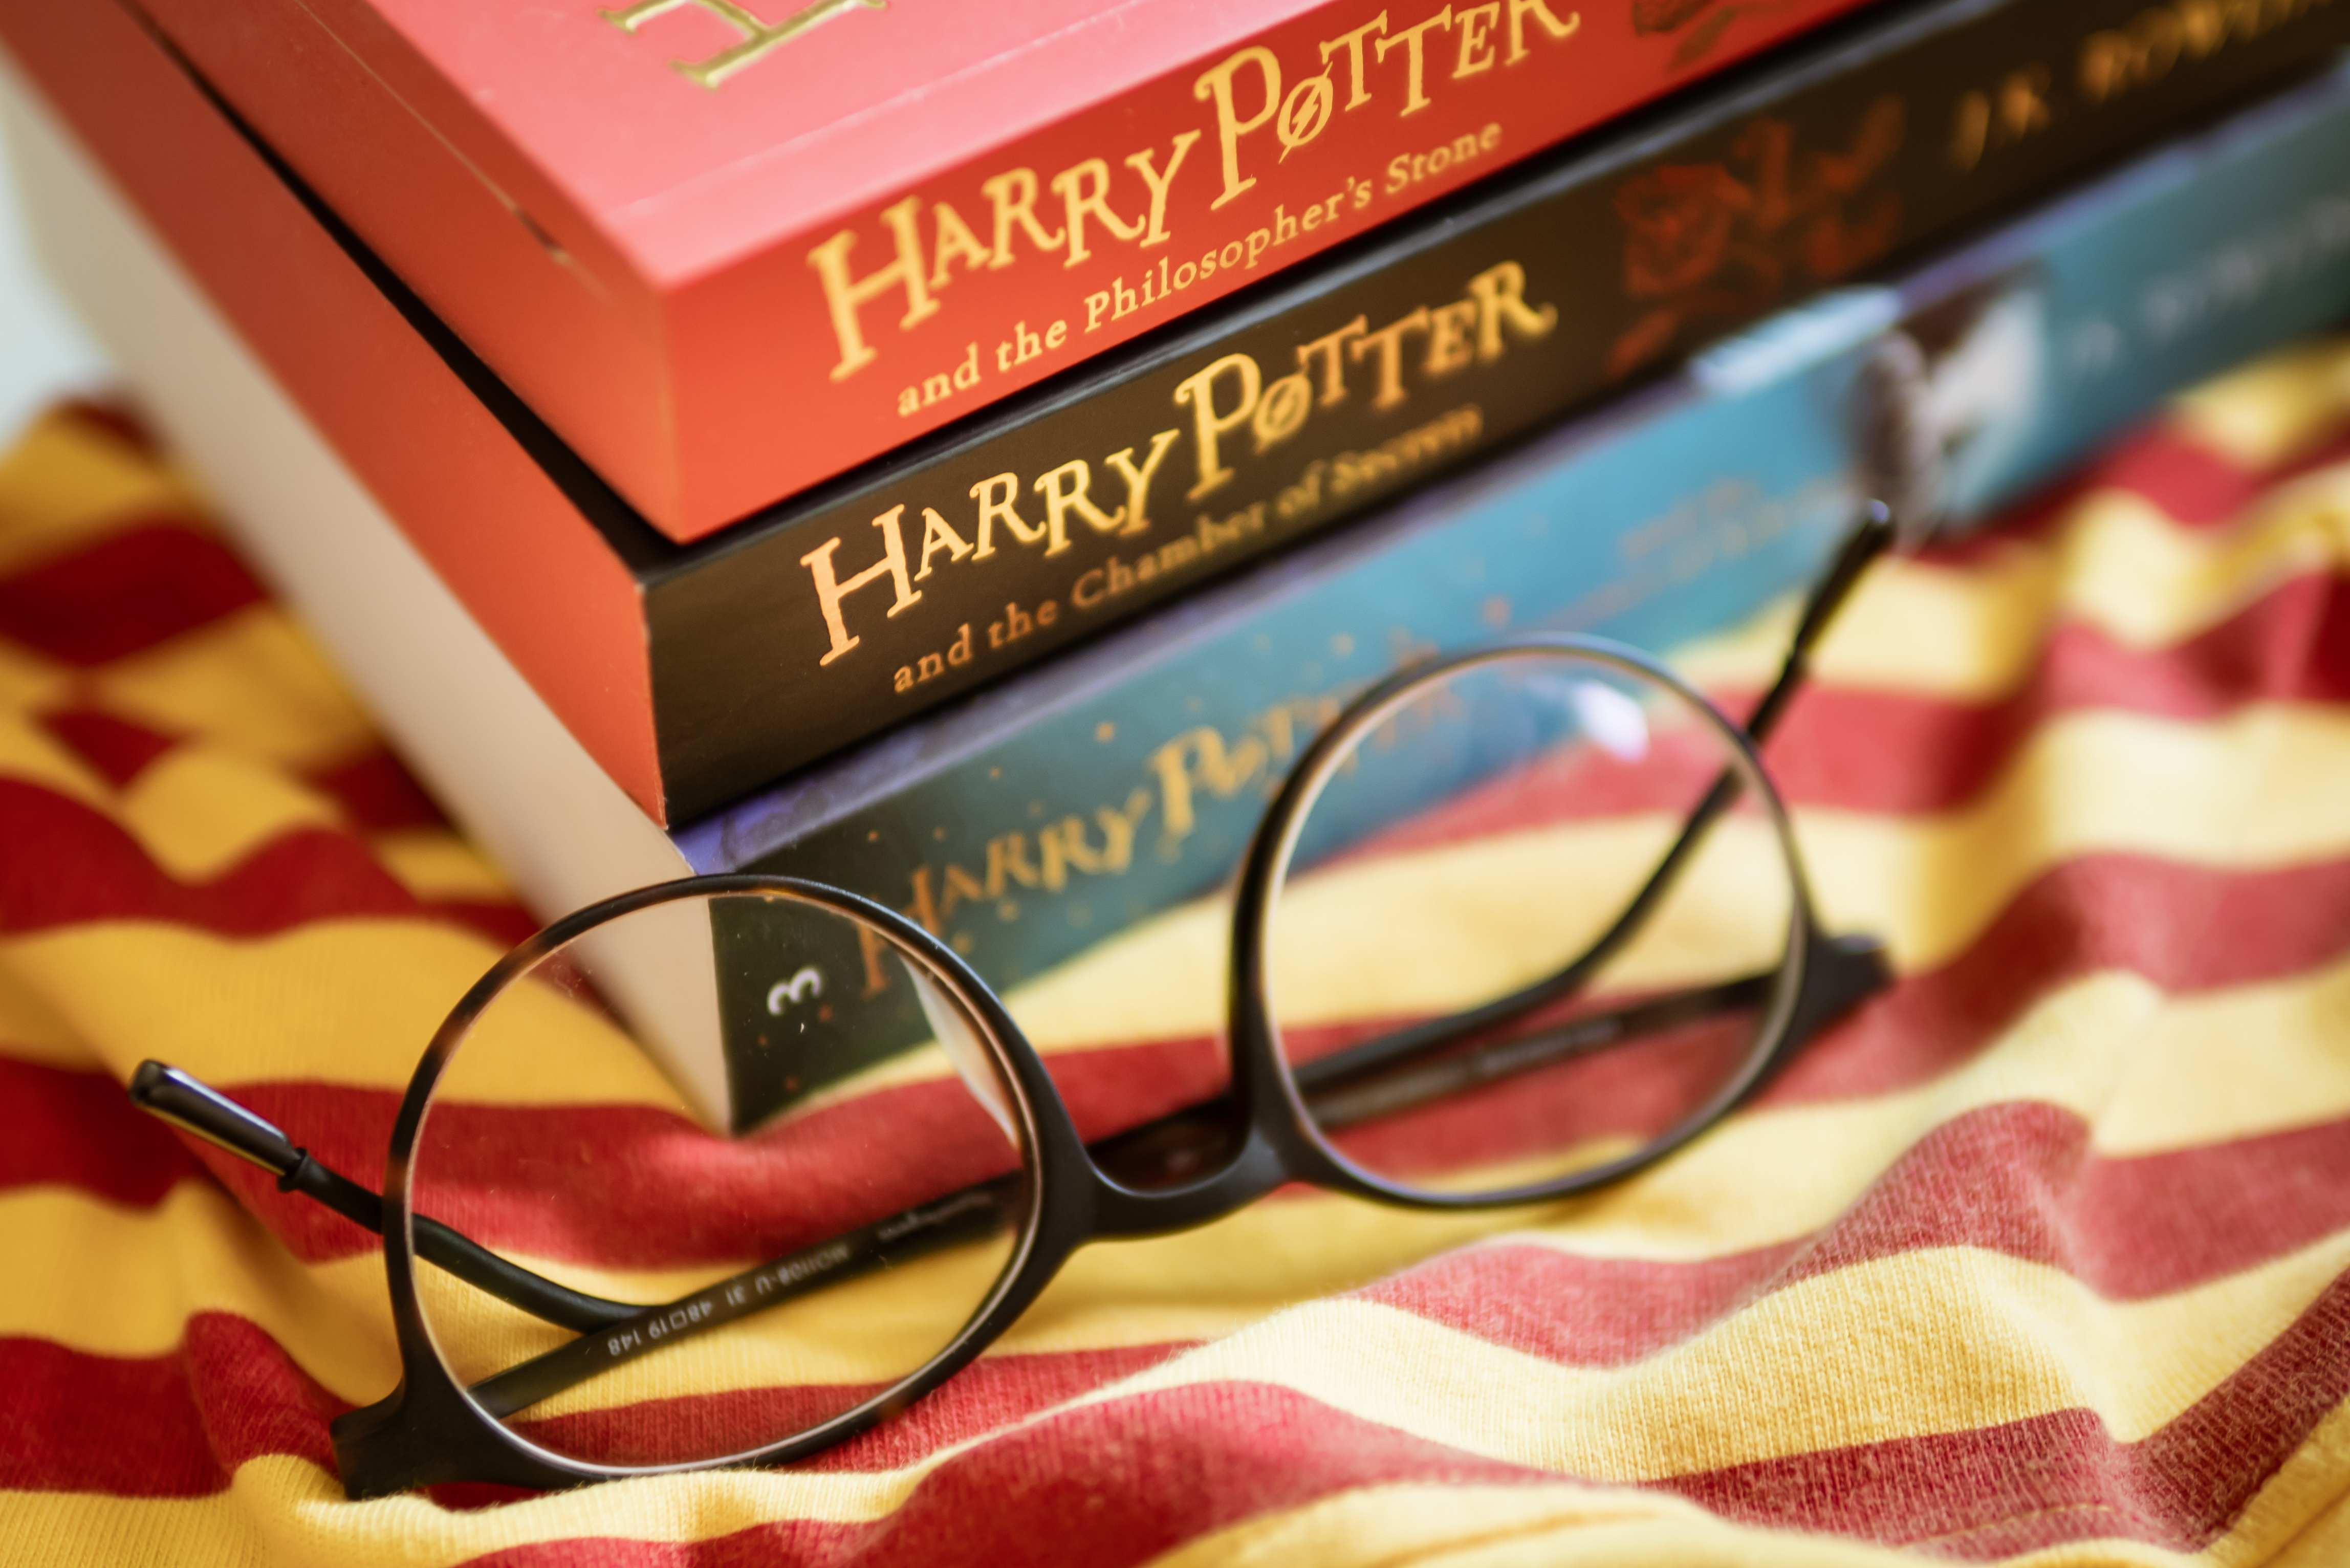 Au găsit pe un raft o carte cu Harry Potter care valorează 30.000 de lire. Moștenirea lăsată celor patru fiice de mama lor